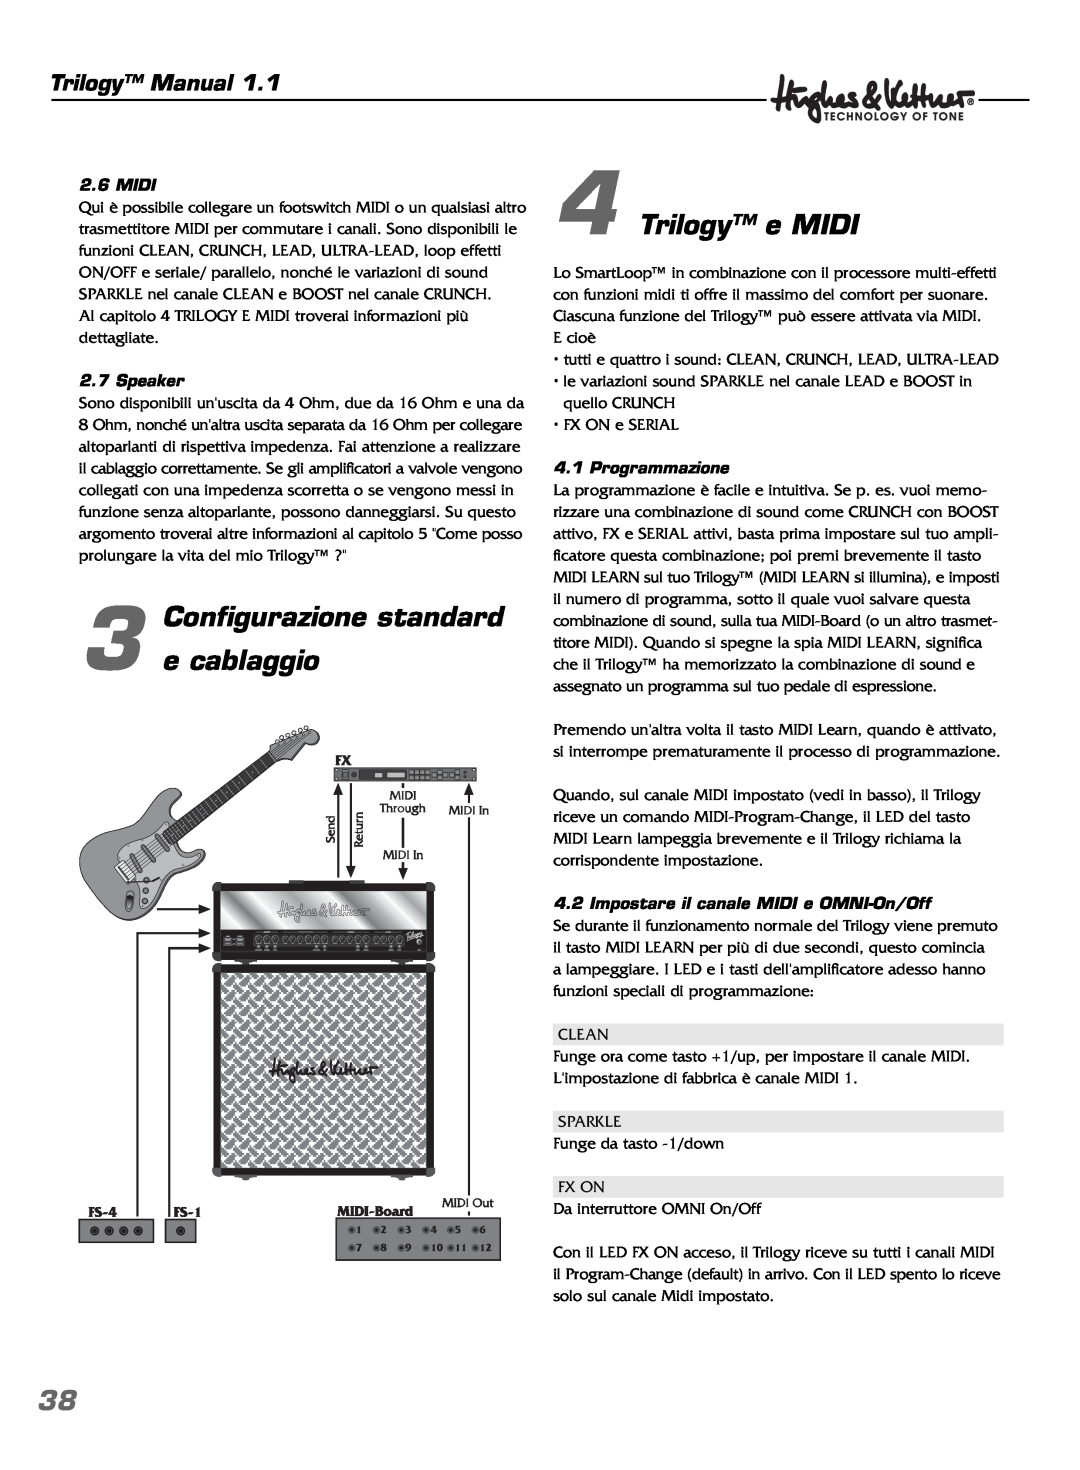 Hughes & Kettner TrilogyTM manual Configurazione standard 3 e cablaggio, Trilogy e MIDI, Trilogy Manual, Midi, Speaker 